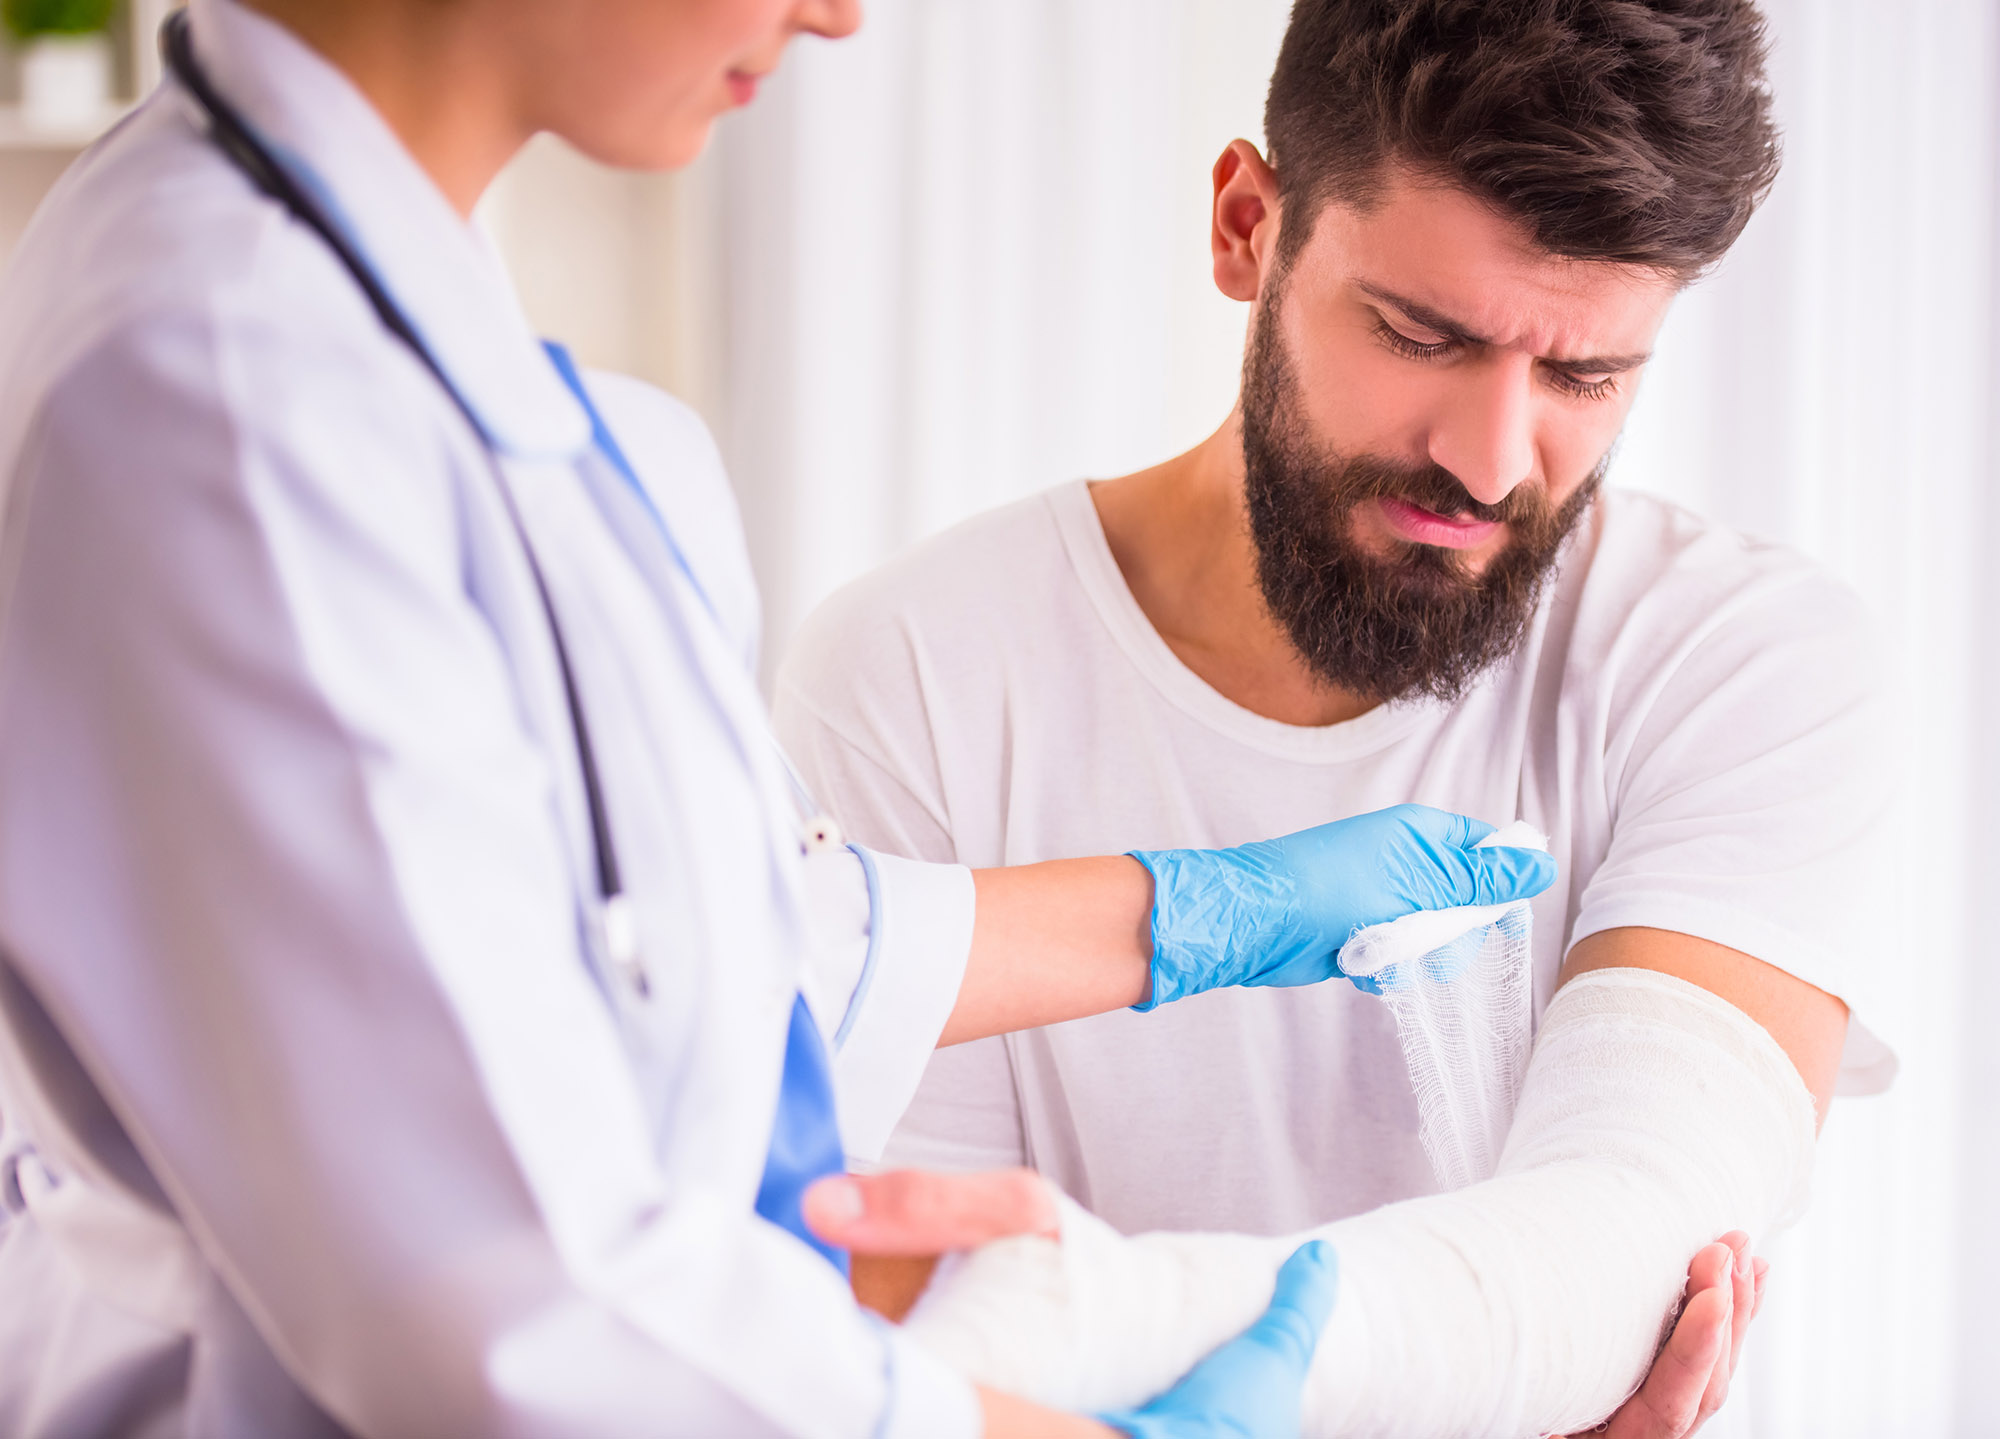 arm injury compensation broken arm solicitors Bristol